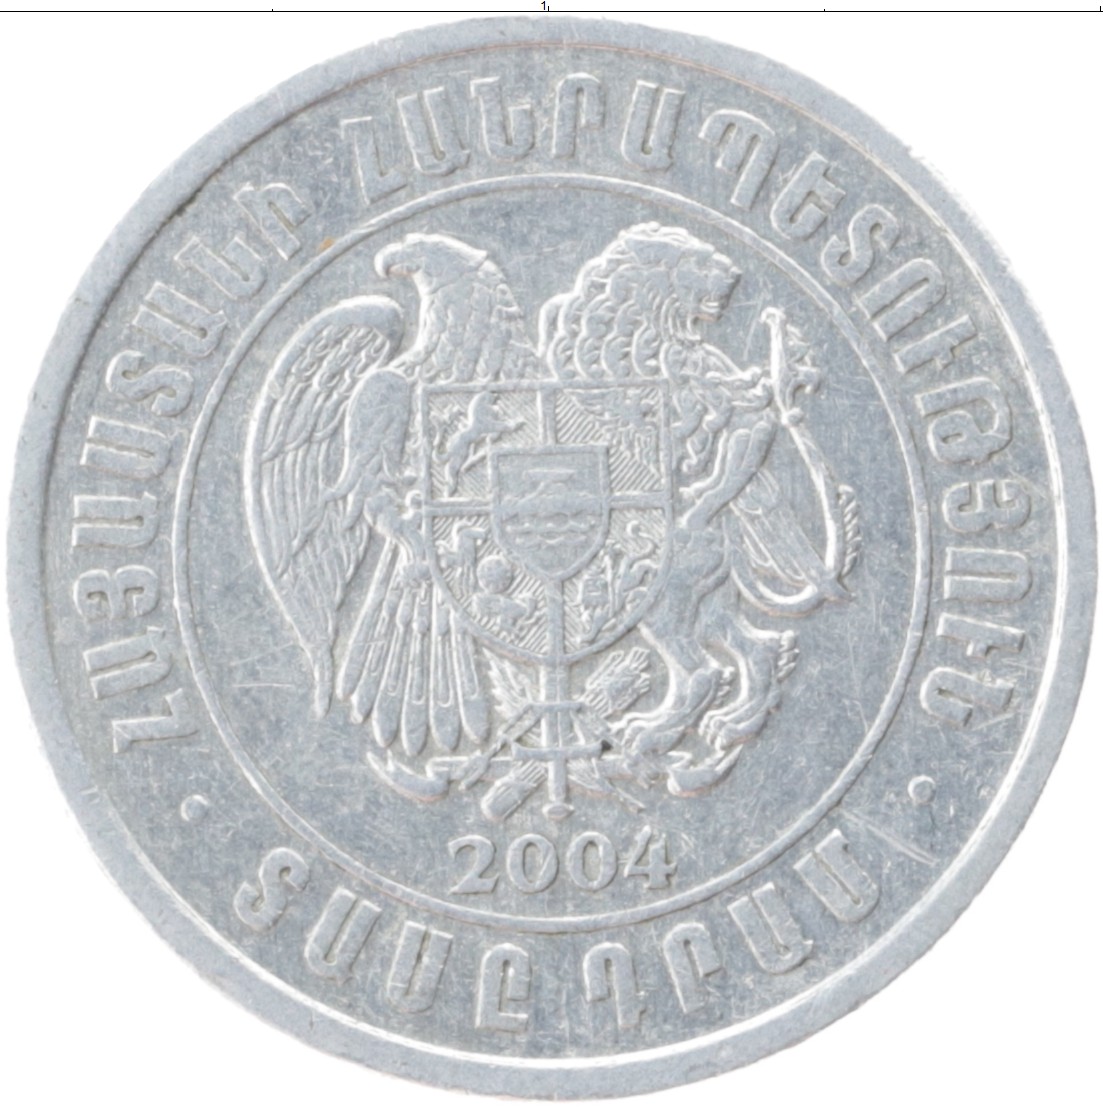 Рубли сколько стоит армения драм. Армения 10 драмов 2004. 10 Драмов 2004 монета. Монета Армении 10. Армянские монеты 10 драм 2004.